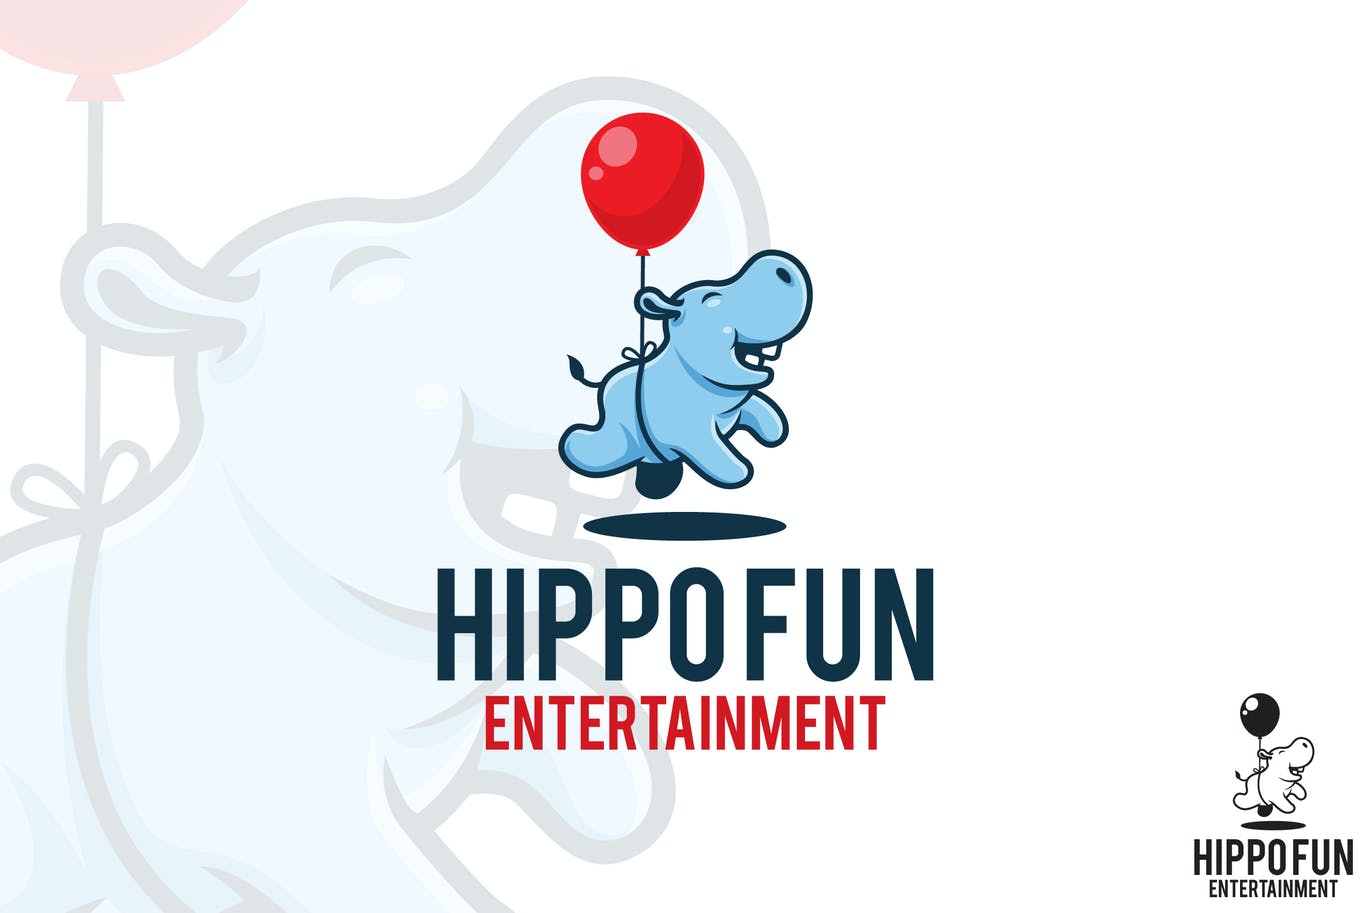 Hippo fun entertainment logo template